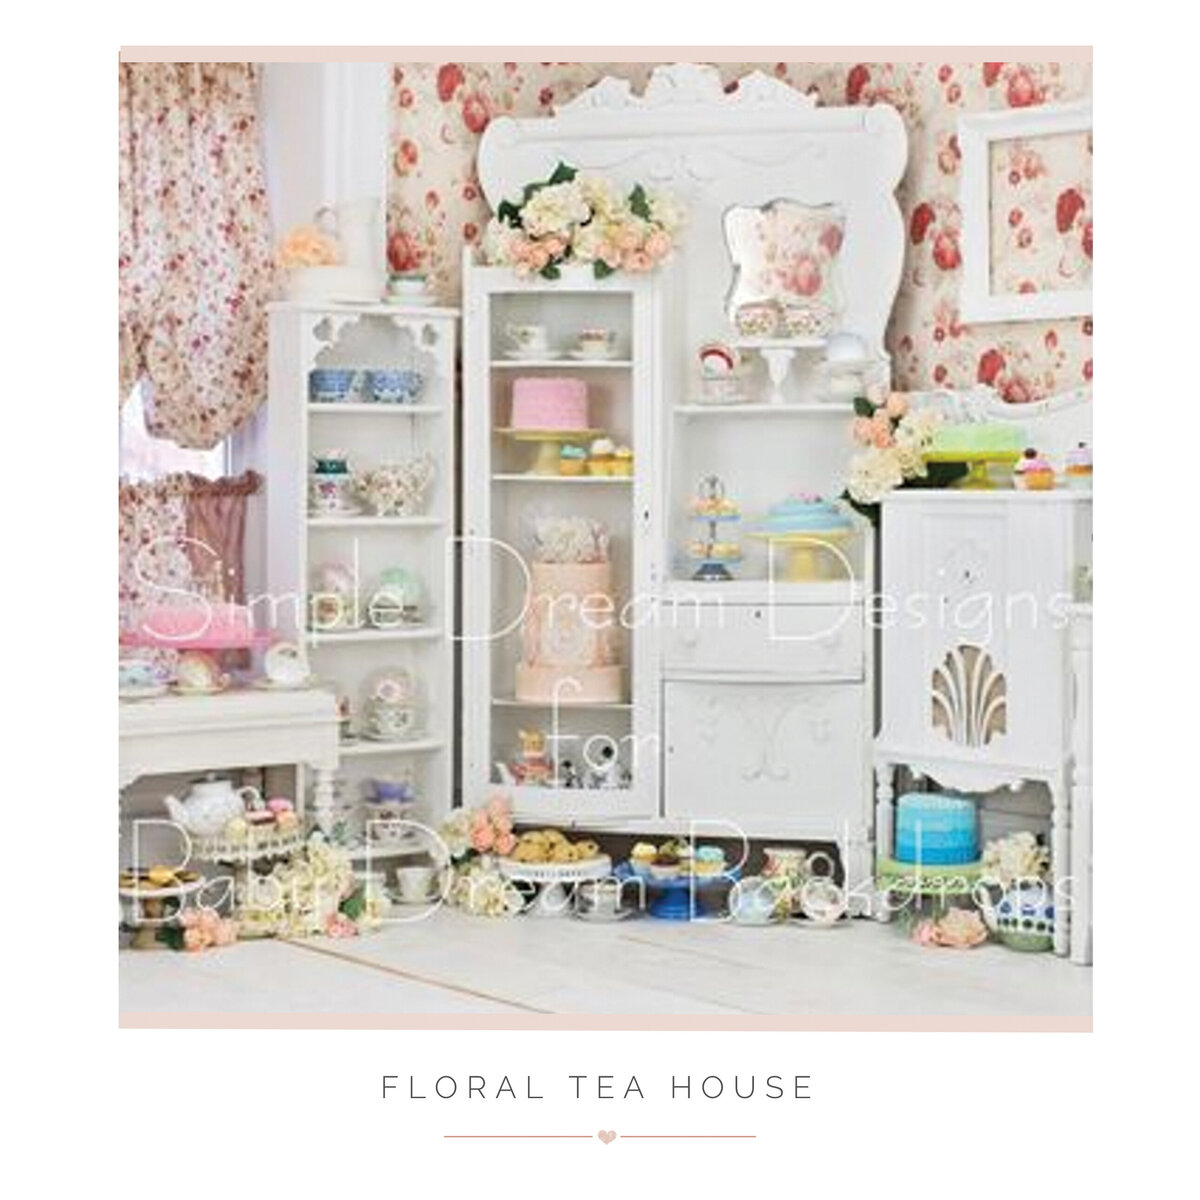 Floral Tea House